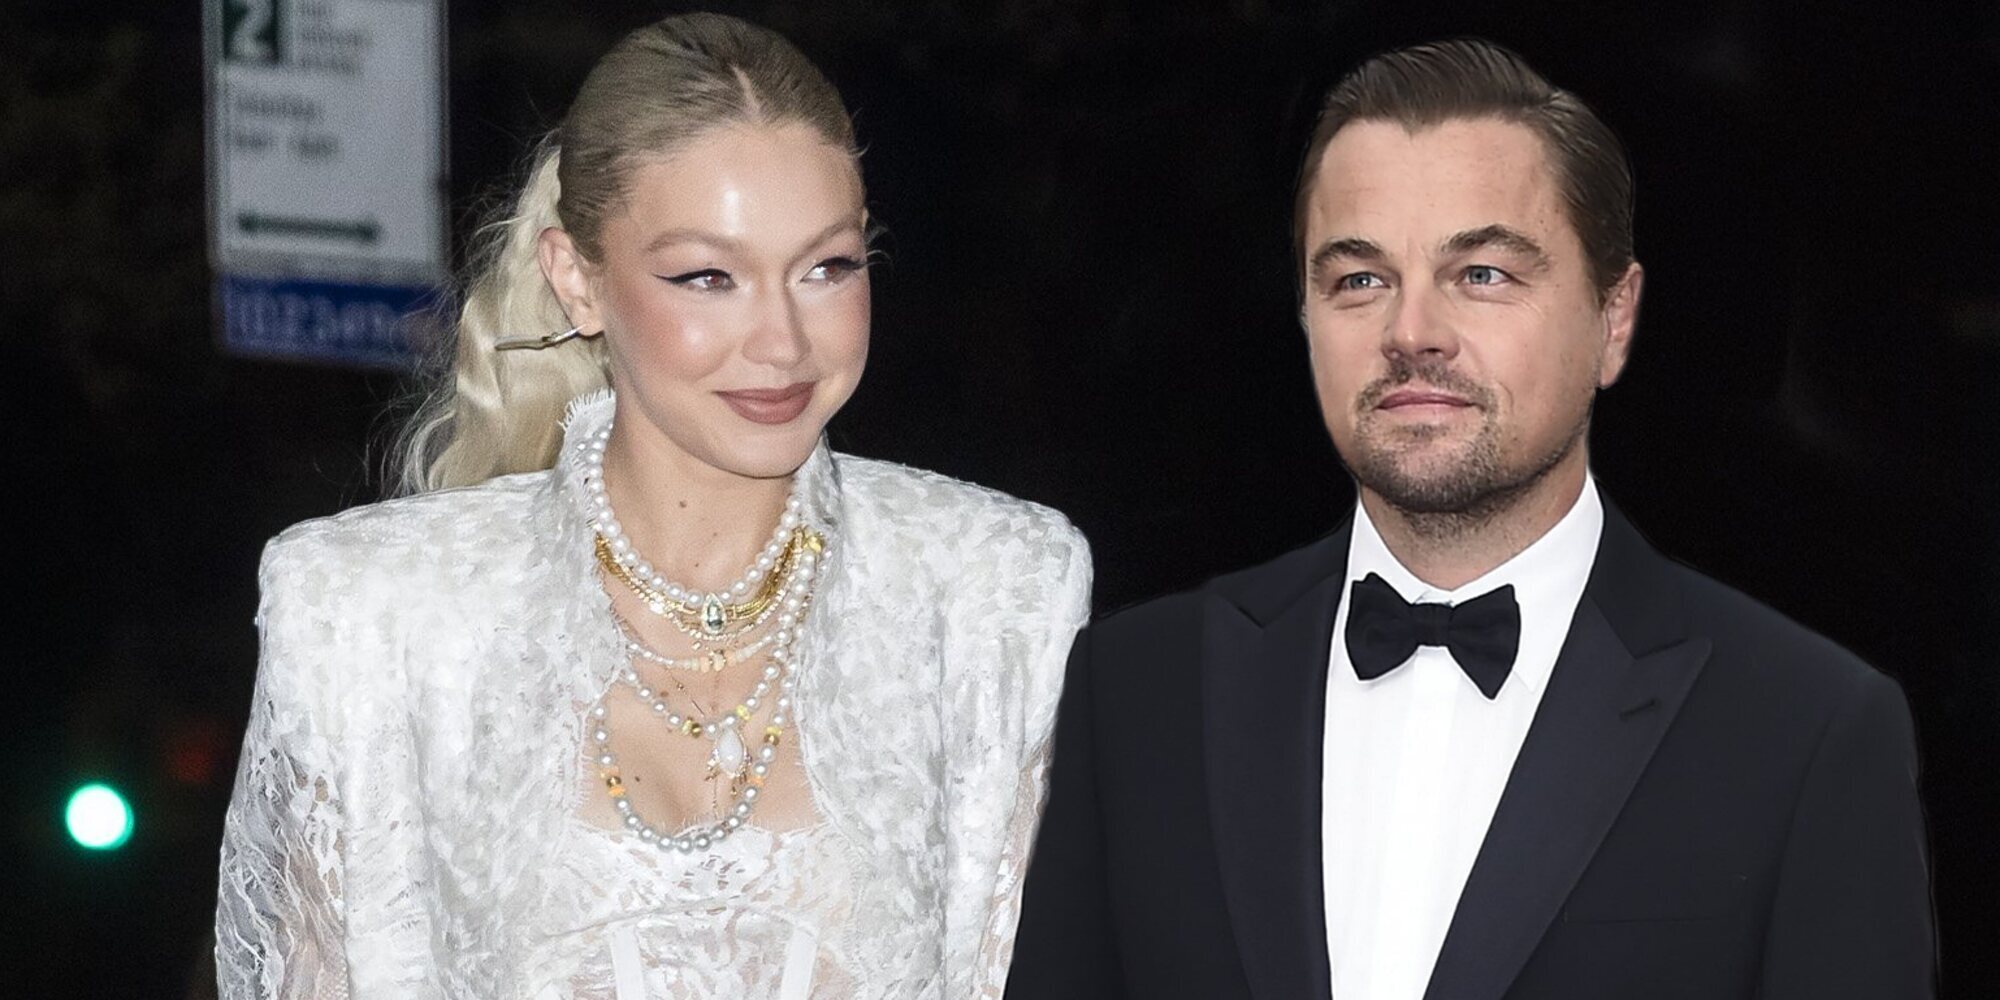 Leonardo DiCaprio y Gigi Hadid, pillados juntos de fiesta entre rumores de relación